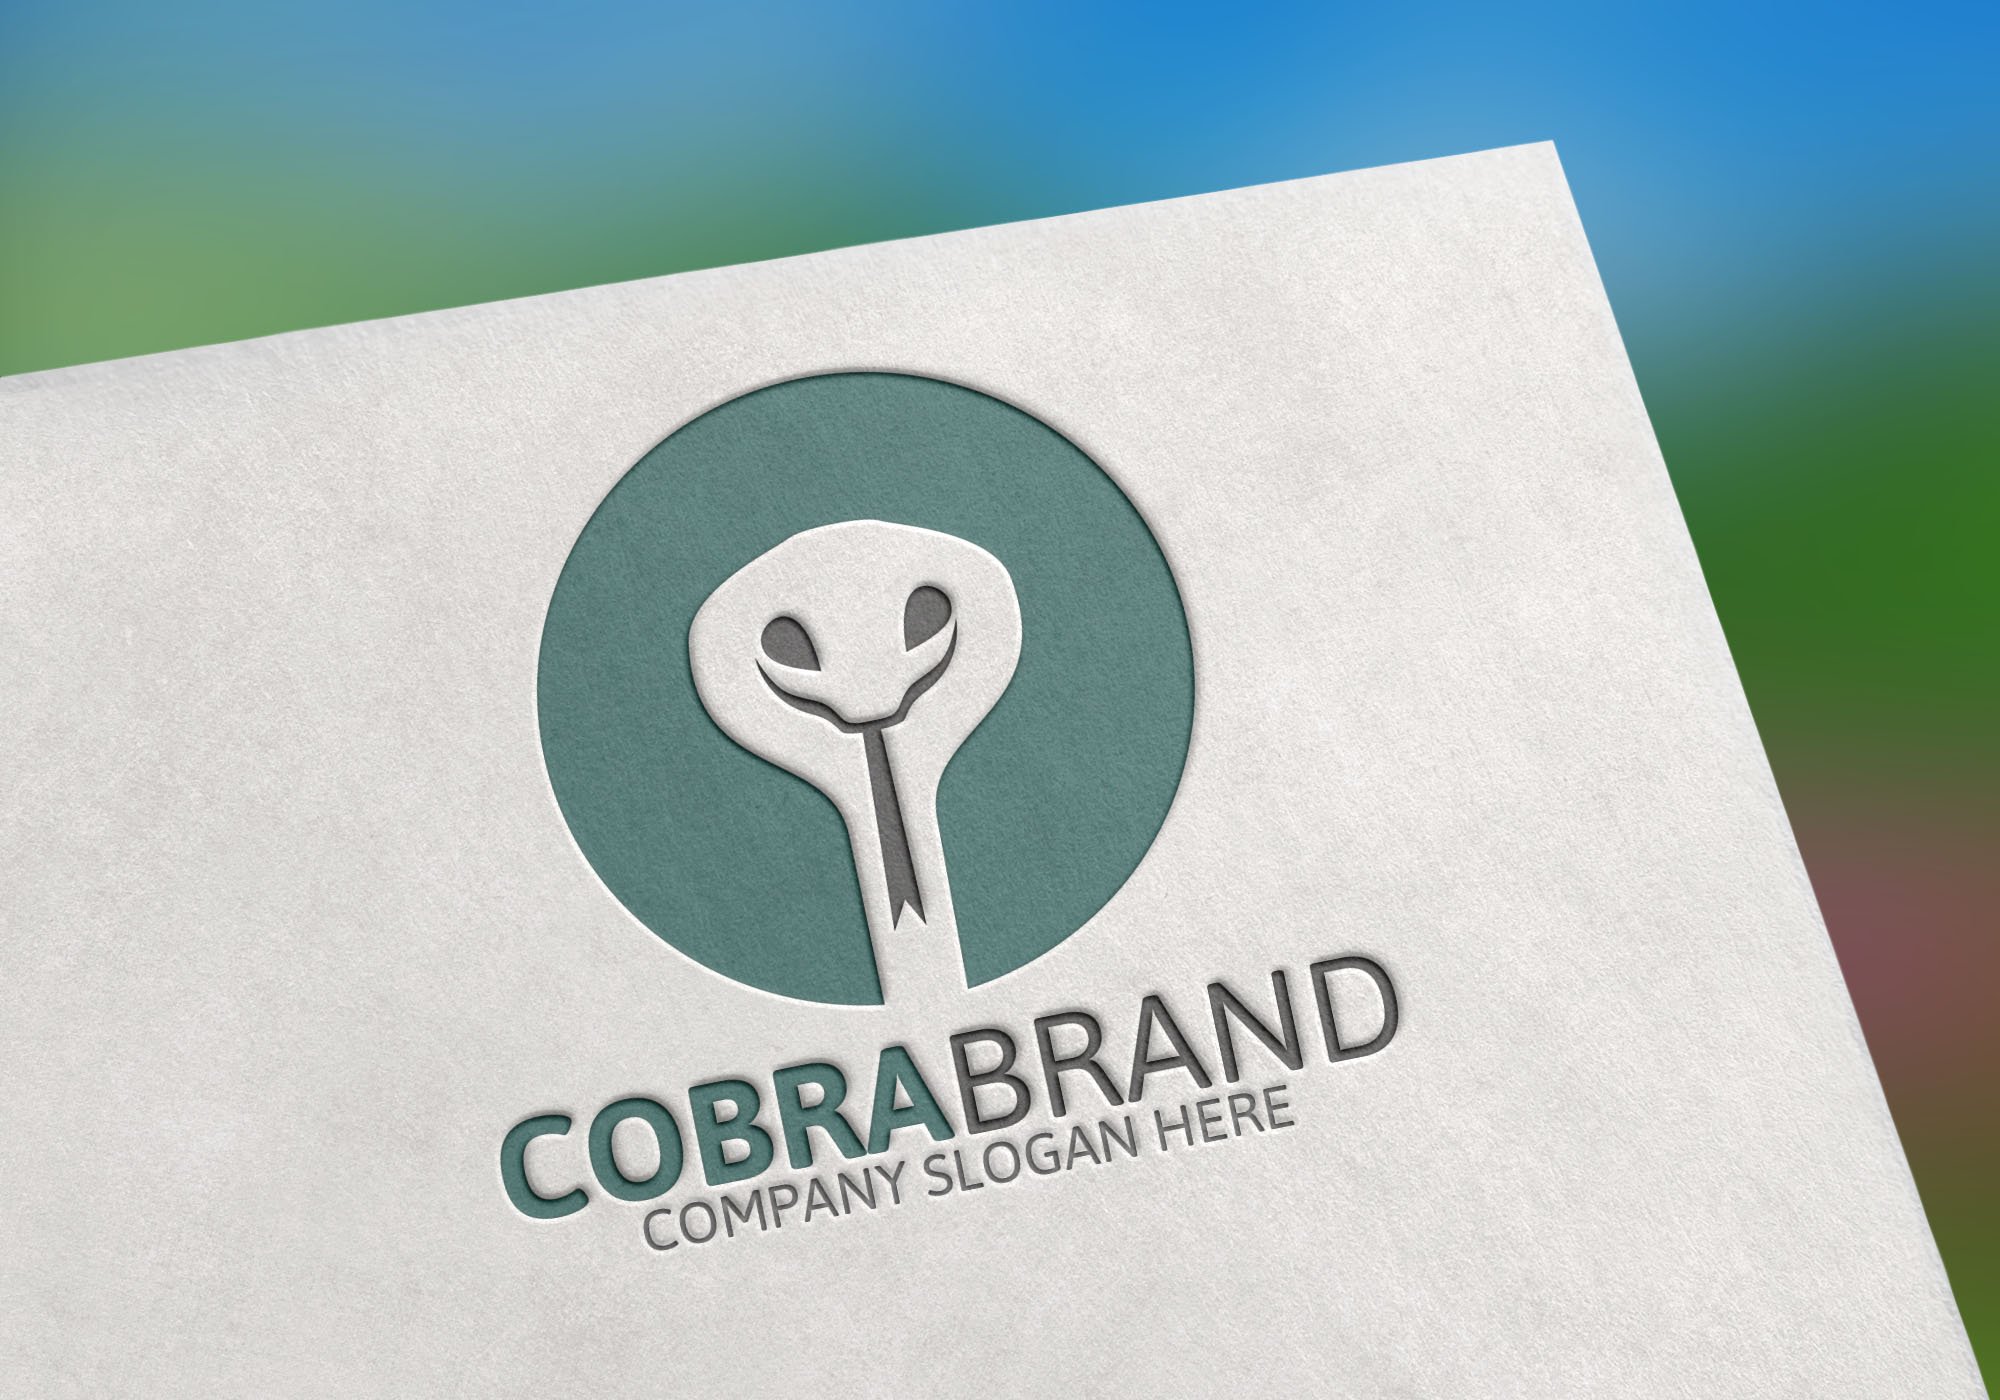 Cobra Brand Logo cover image.